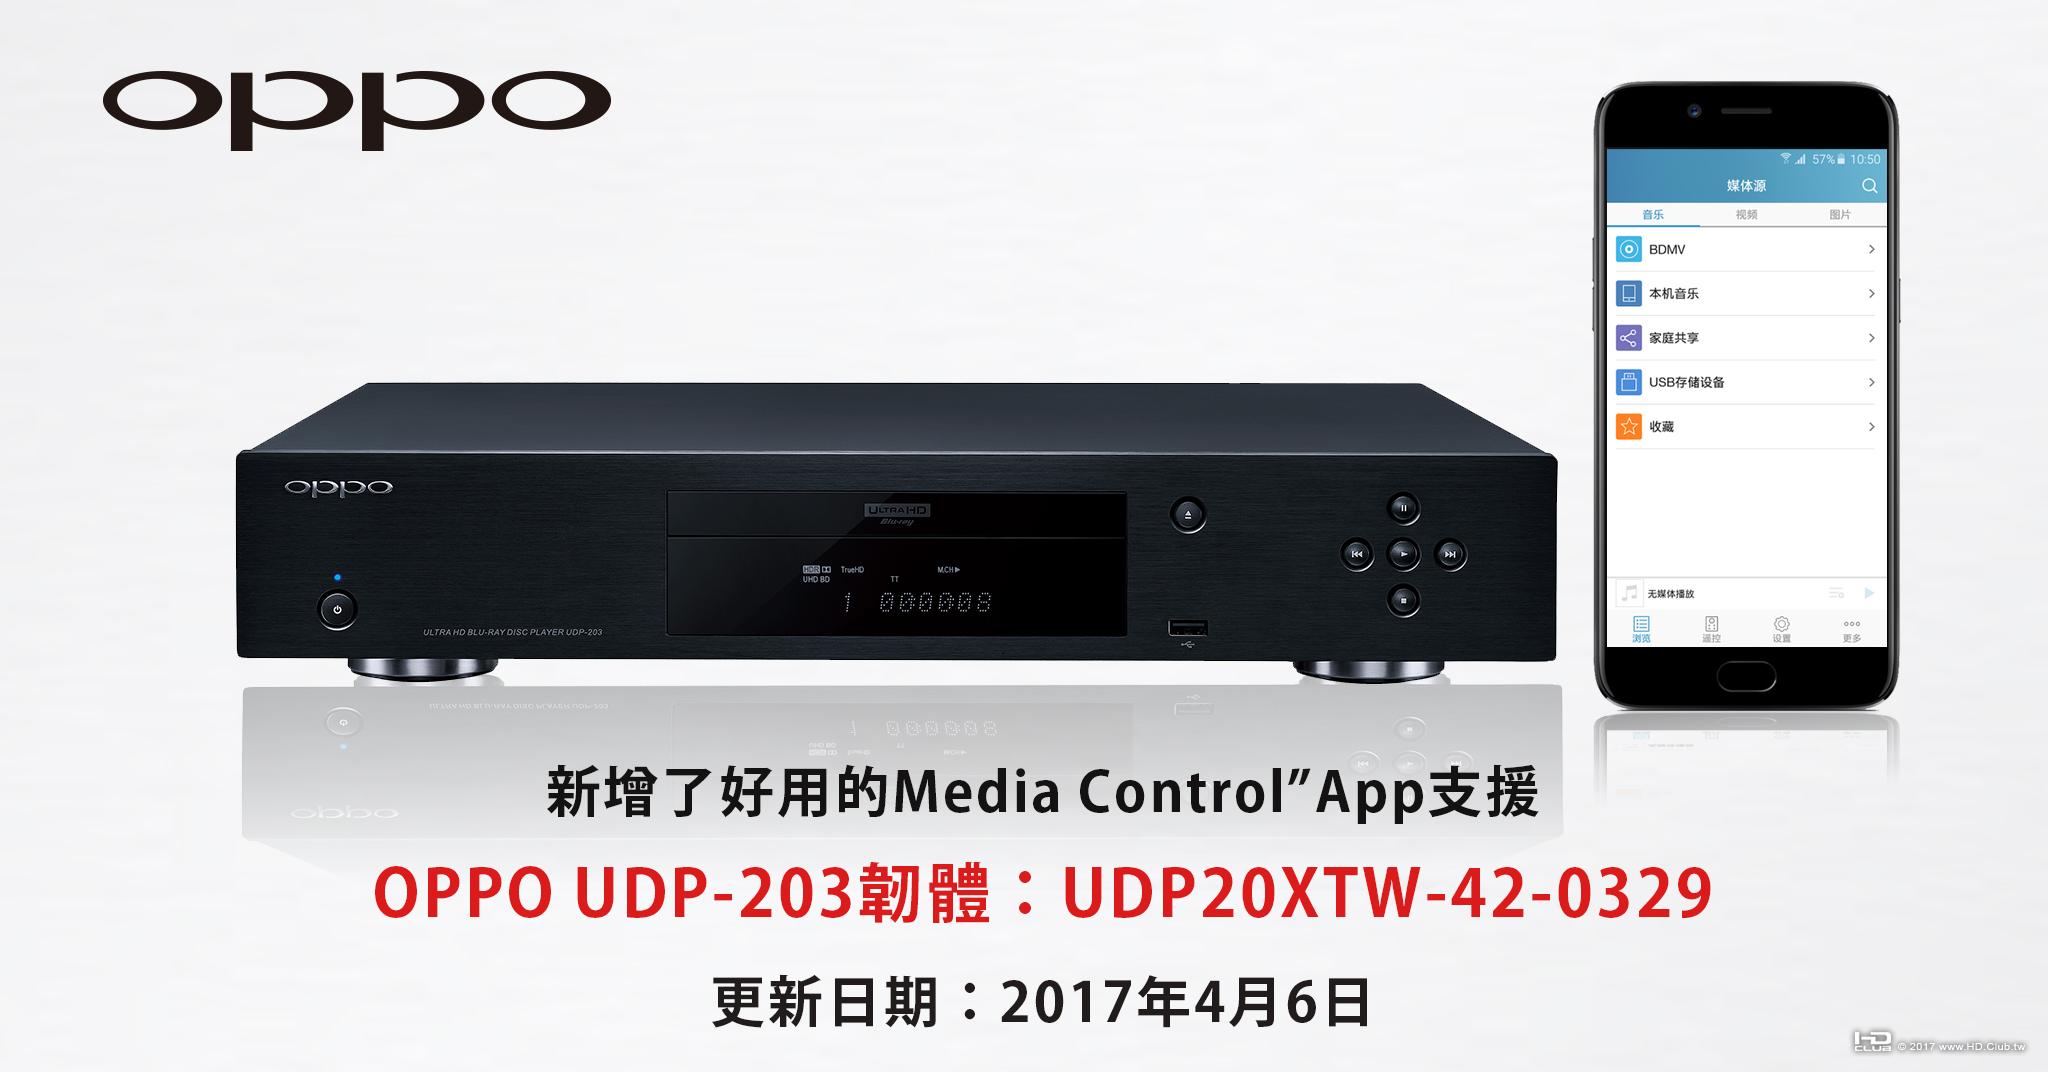 OPPO203韌體UDP20XTW-42-0329.jpg